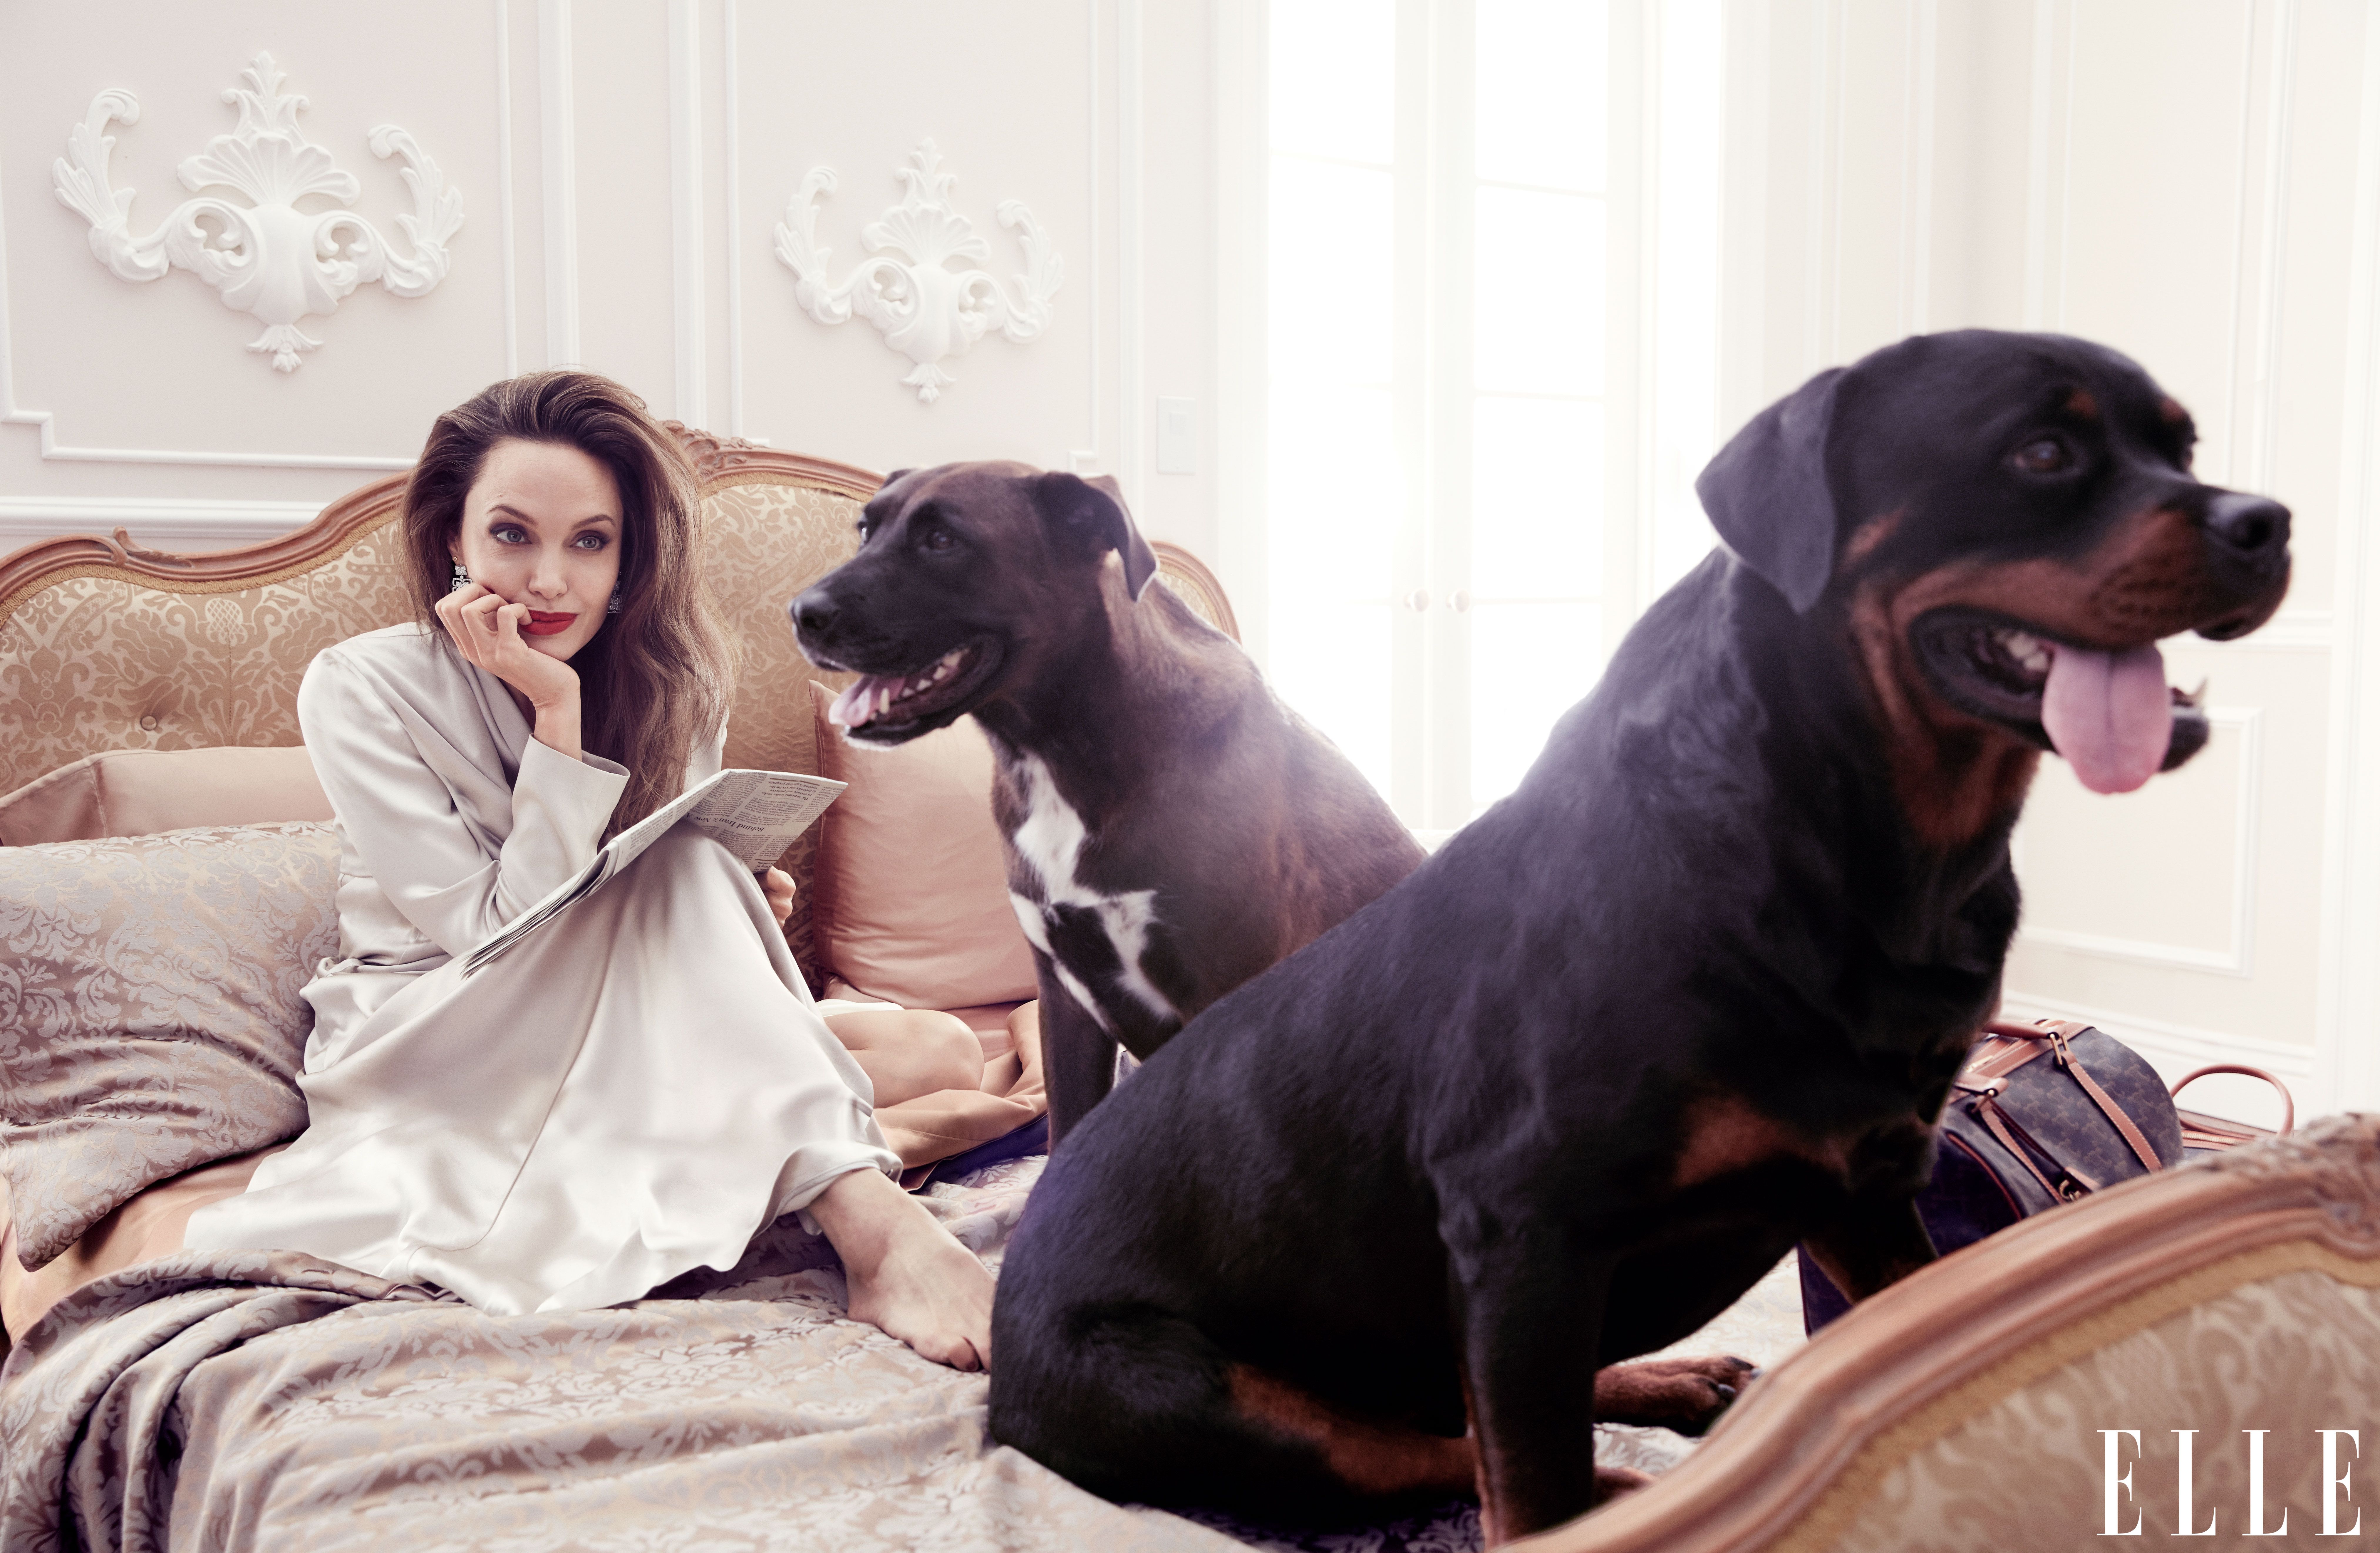 Скачать обои бесплатно Собака, Брюнетка, Американский, Знаменитости, Анджелина Джоли, Актриса картинка на рабочий стол ПК